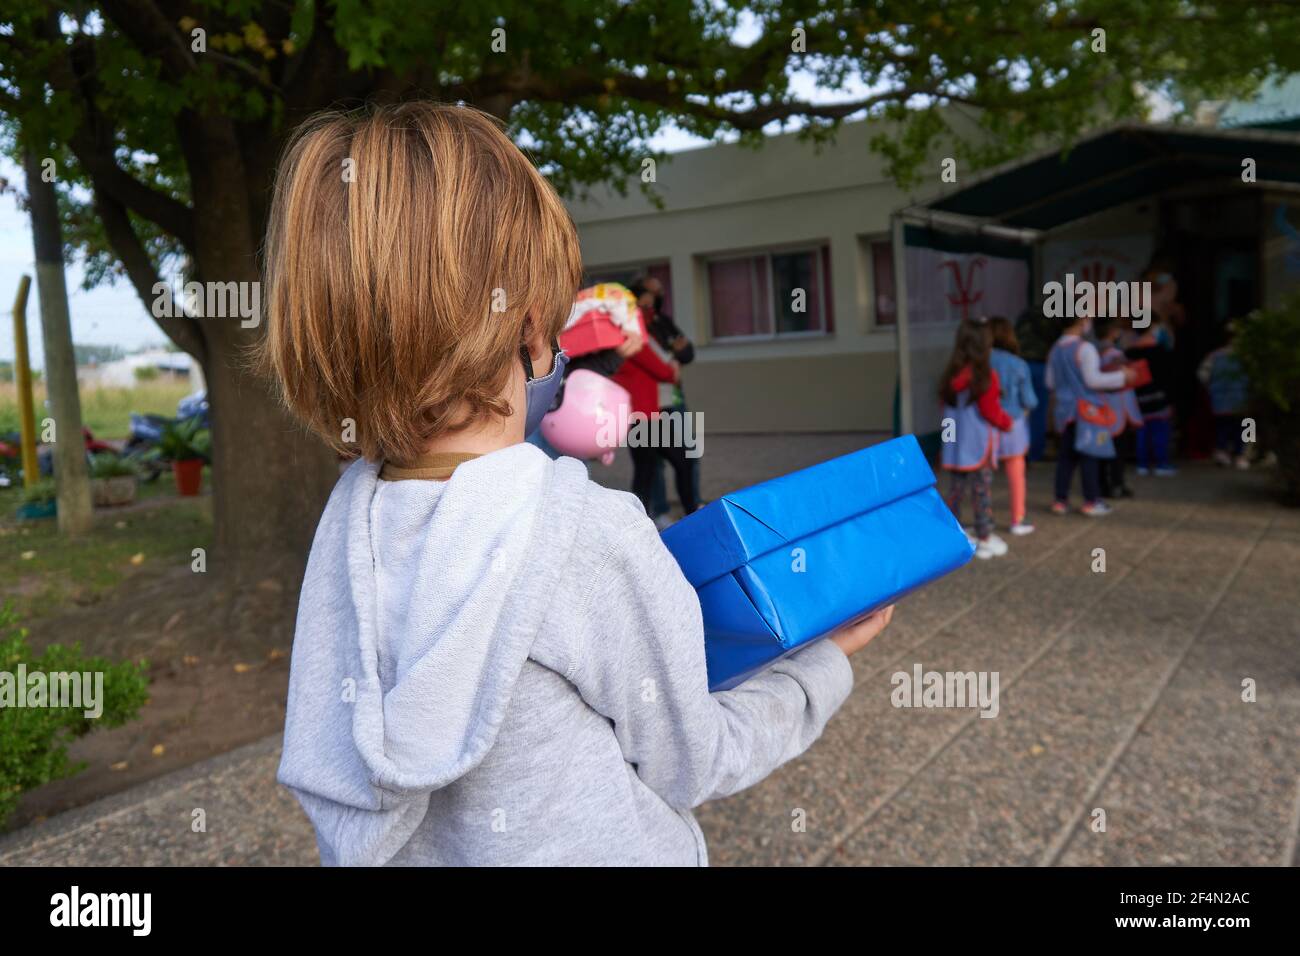 Un enfant d'âge préscolaire regarde ses collègues pendant qu'ils font la queue pour se laver les mains et faire mesurer leur température avant d'entrer dans les salles de classe.après une année d'école en ligne ou aucune école du tout en raison de la pandémie du coronavirus, les enfants d'âge préscolaire retournent à l'école en Argentine. Banque D'Images